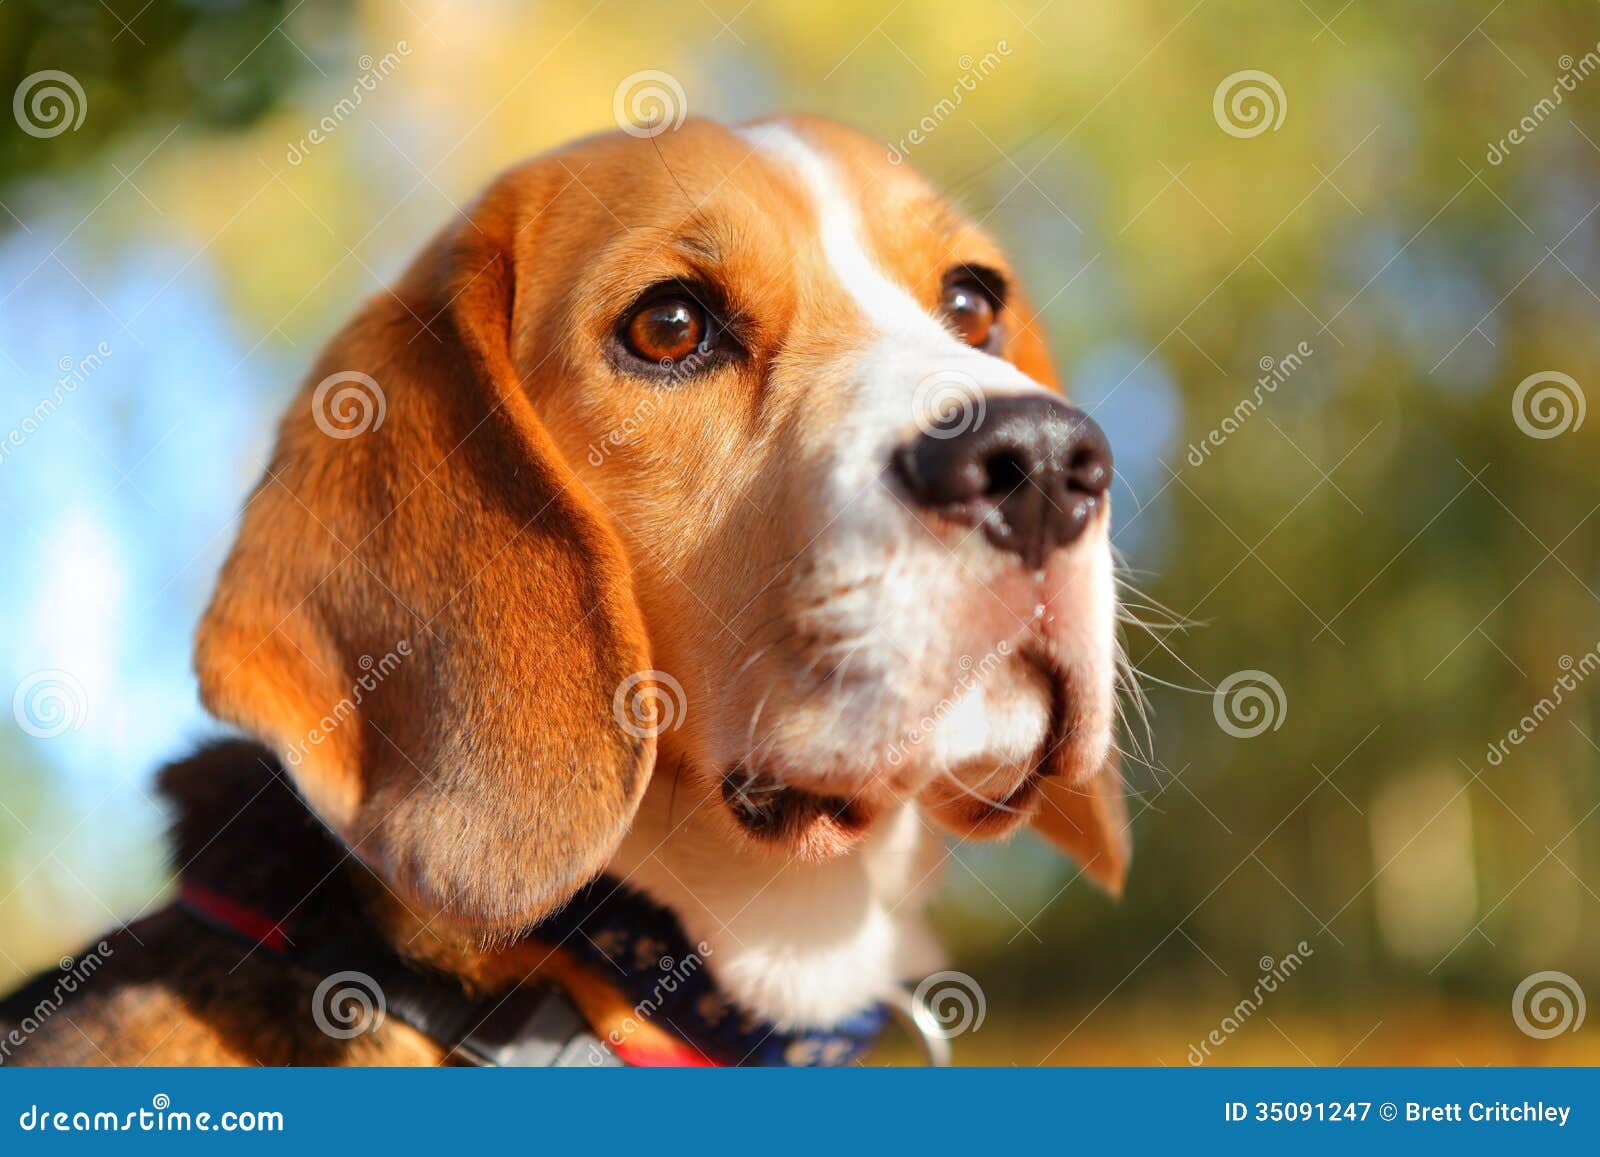 fall beagle dog